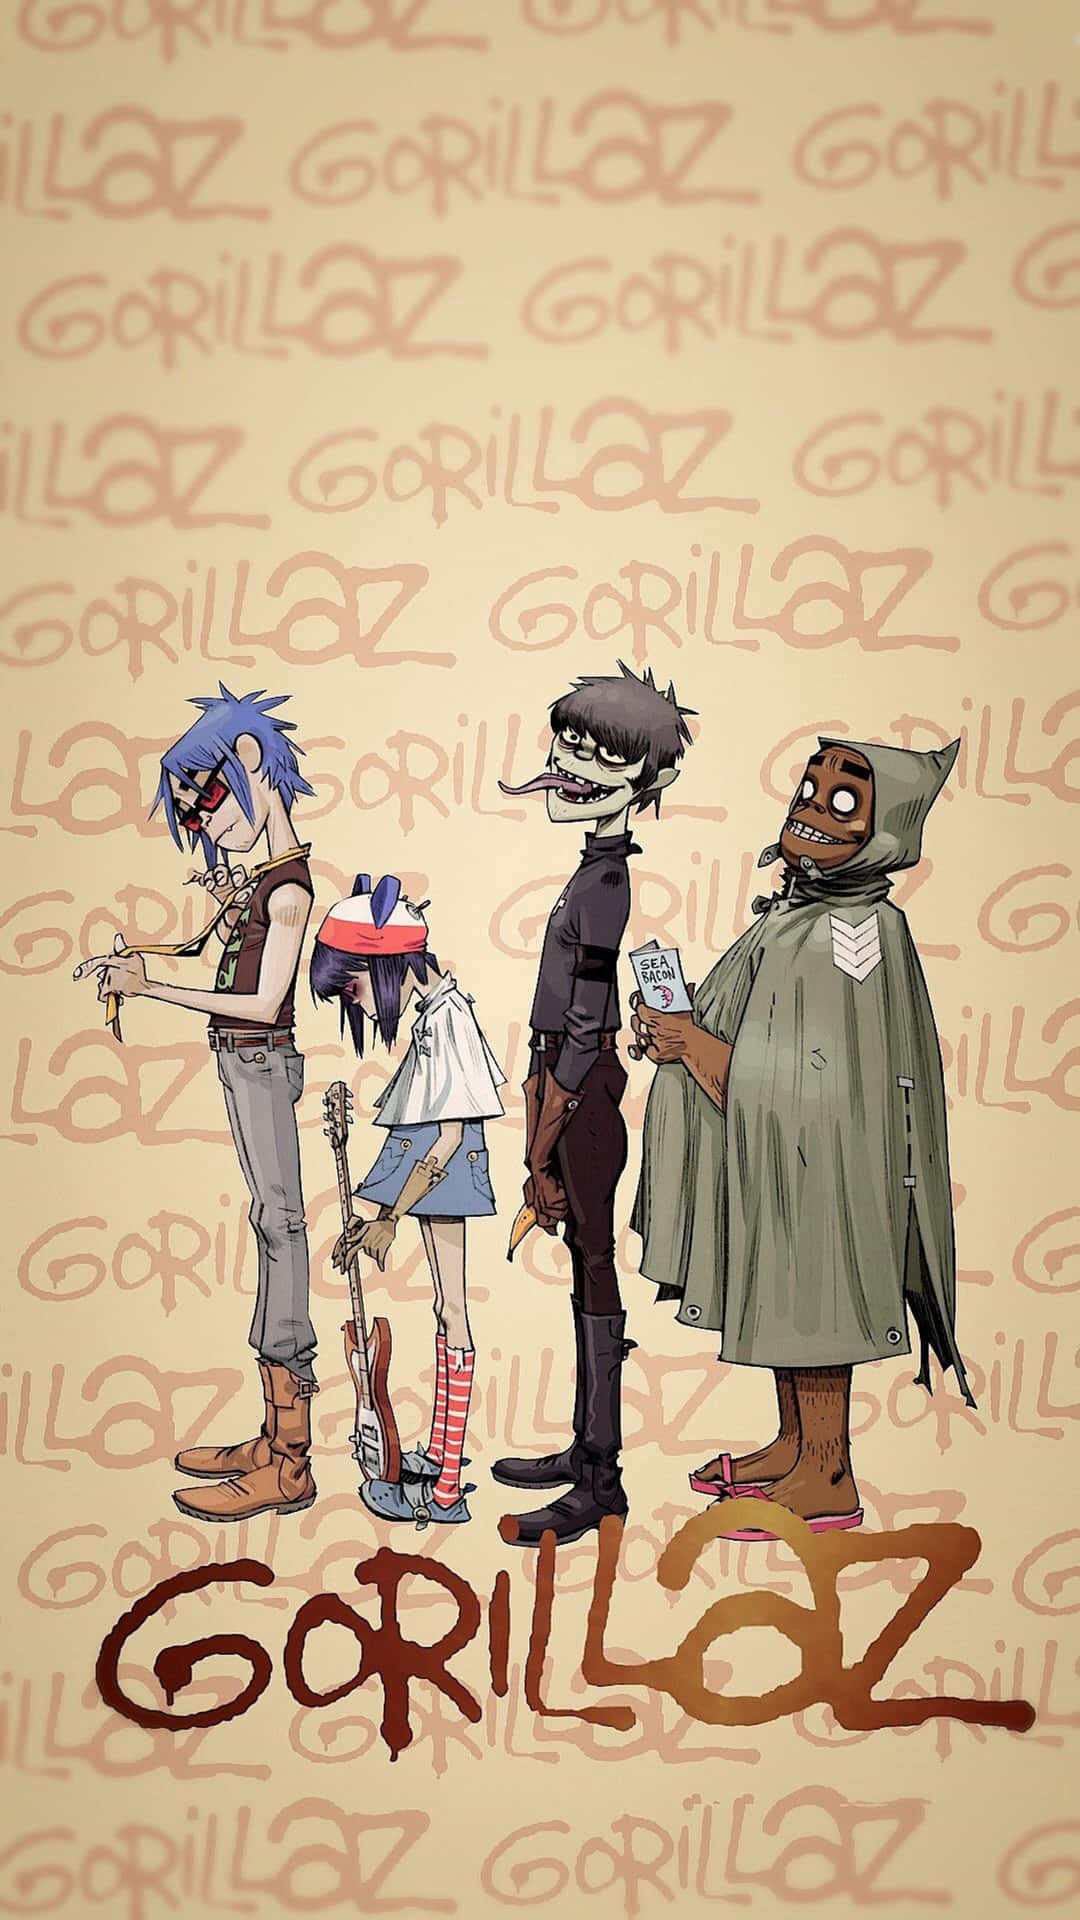 Gorillaz' Virtual Band Medlemmer Cartoonized i en 4K Skrivebords Wallpaper. Wallpaper